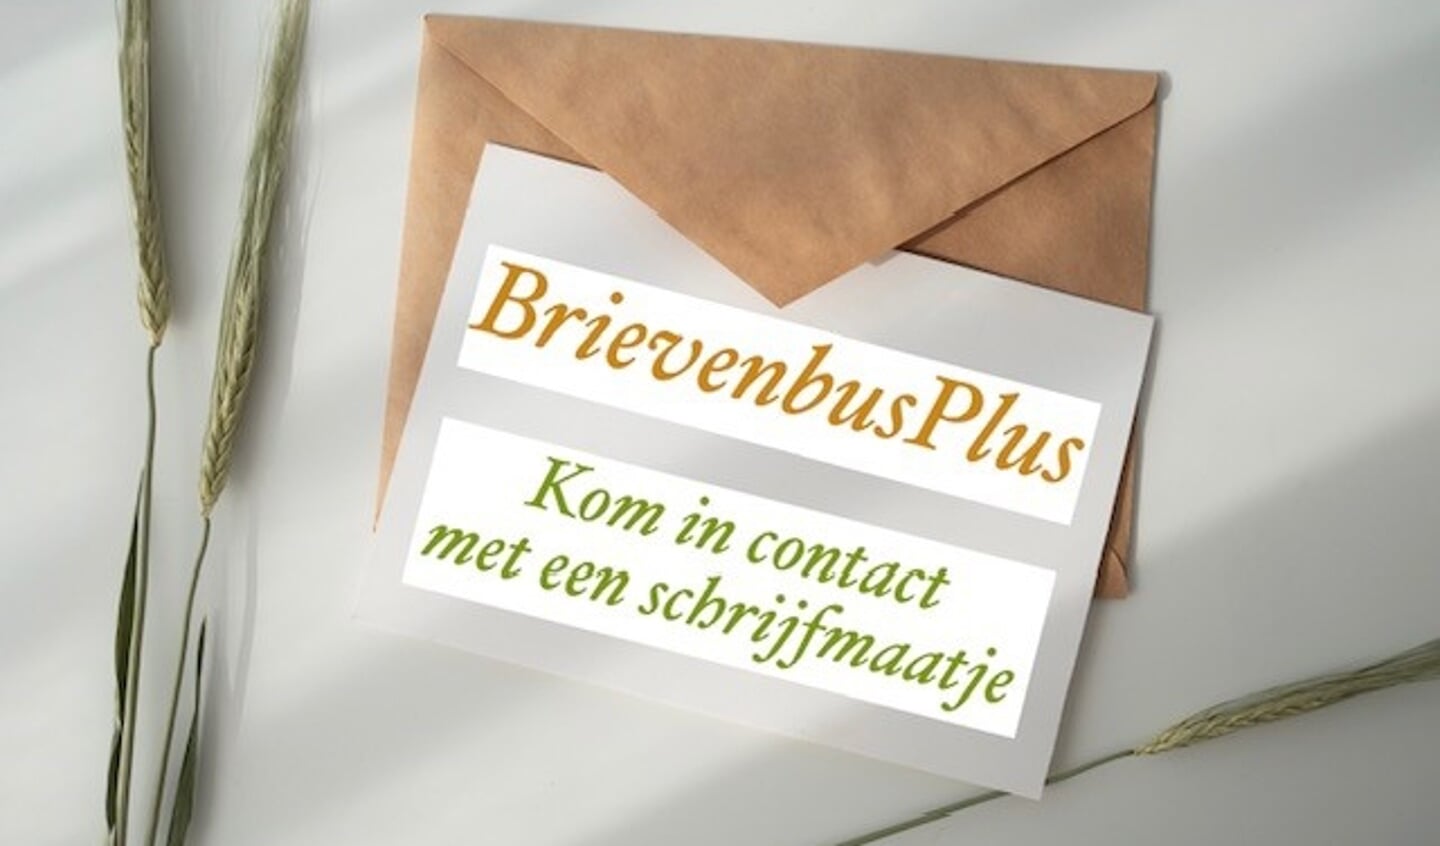 BrievenbusPlus is een penvriendproject, opgezet voor iedereen die behoefte heeft aan een schrijfmaatje.